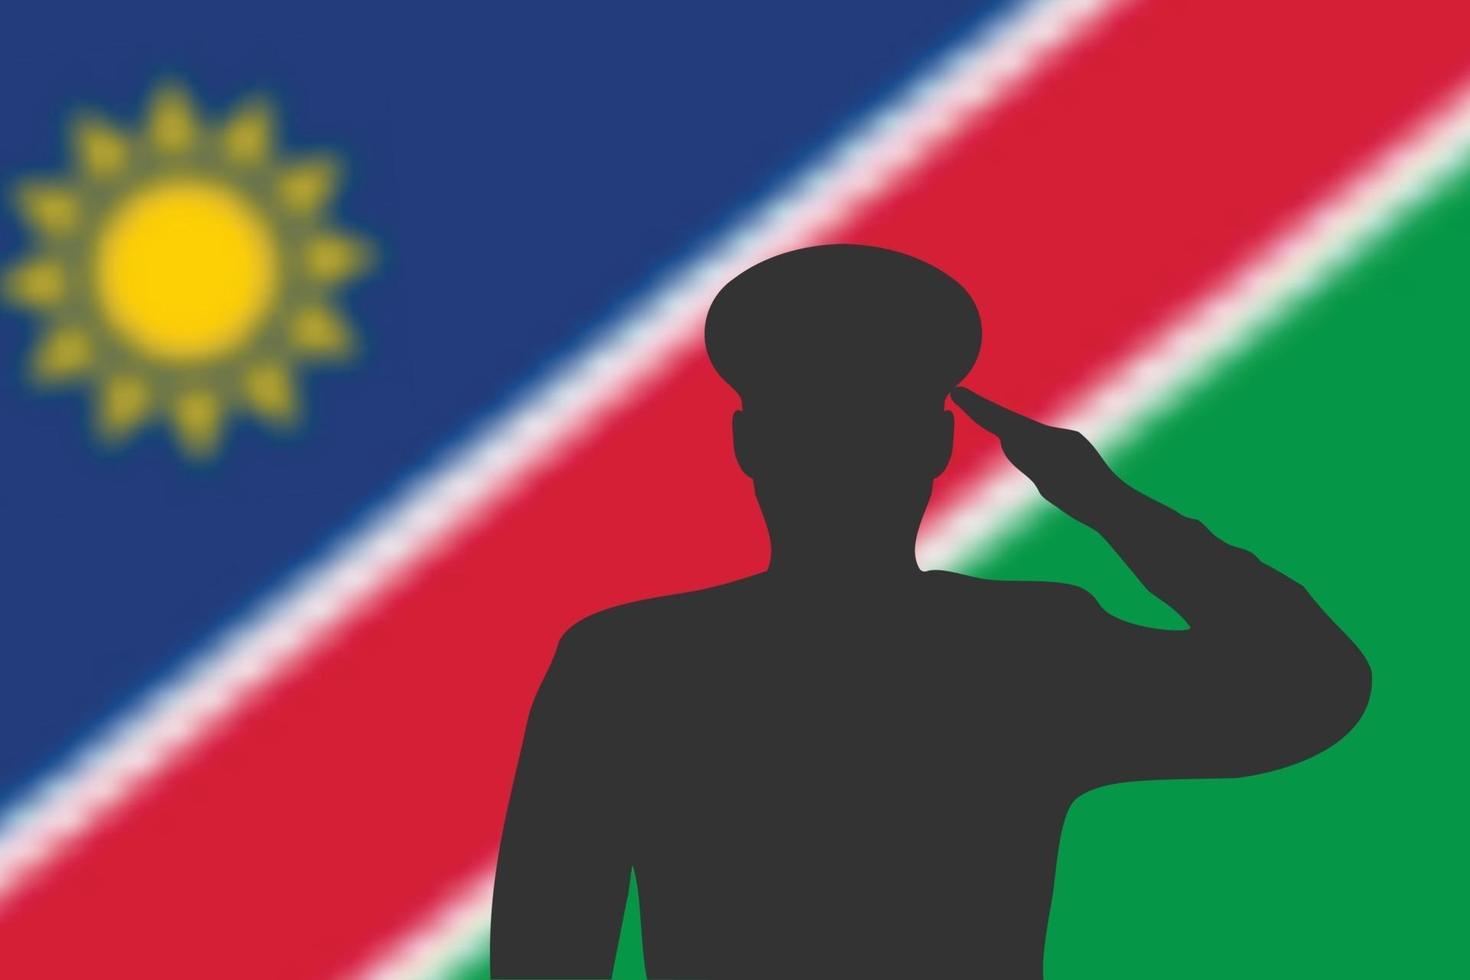 silueta de soldadura sobre fondo borroso con la bandera de namibia. vector